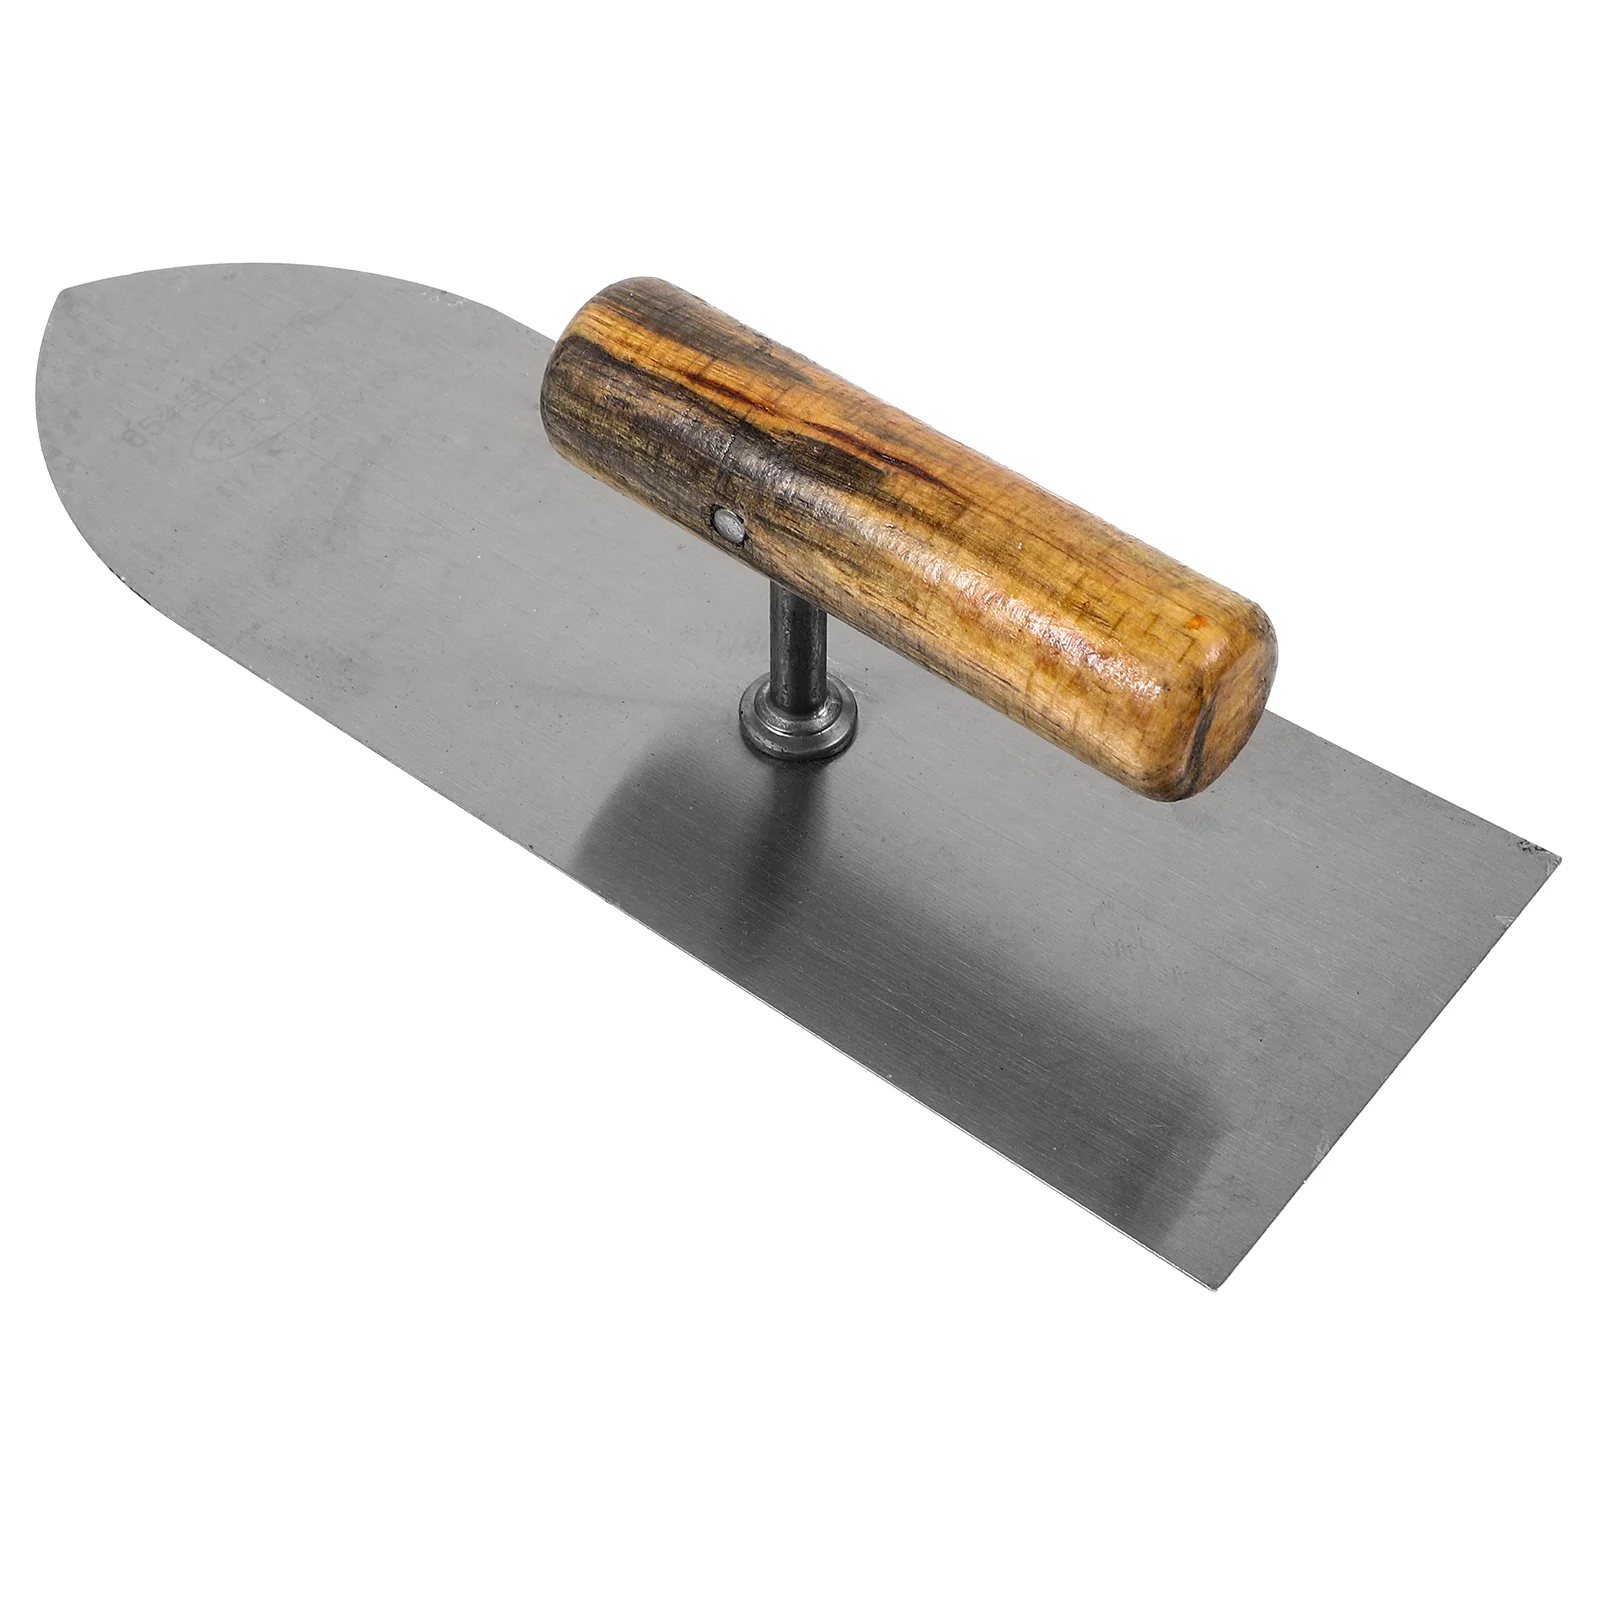 

Мастерок для кирпичной кладки ручной инструмент скребок Инструменты для бетона сверхпрочная нержавеющая сталь мощный гипсокартон